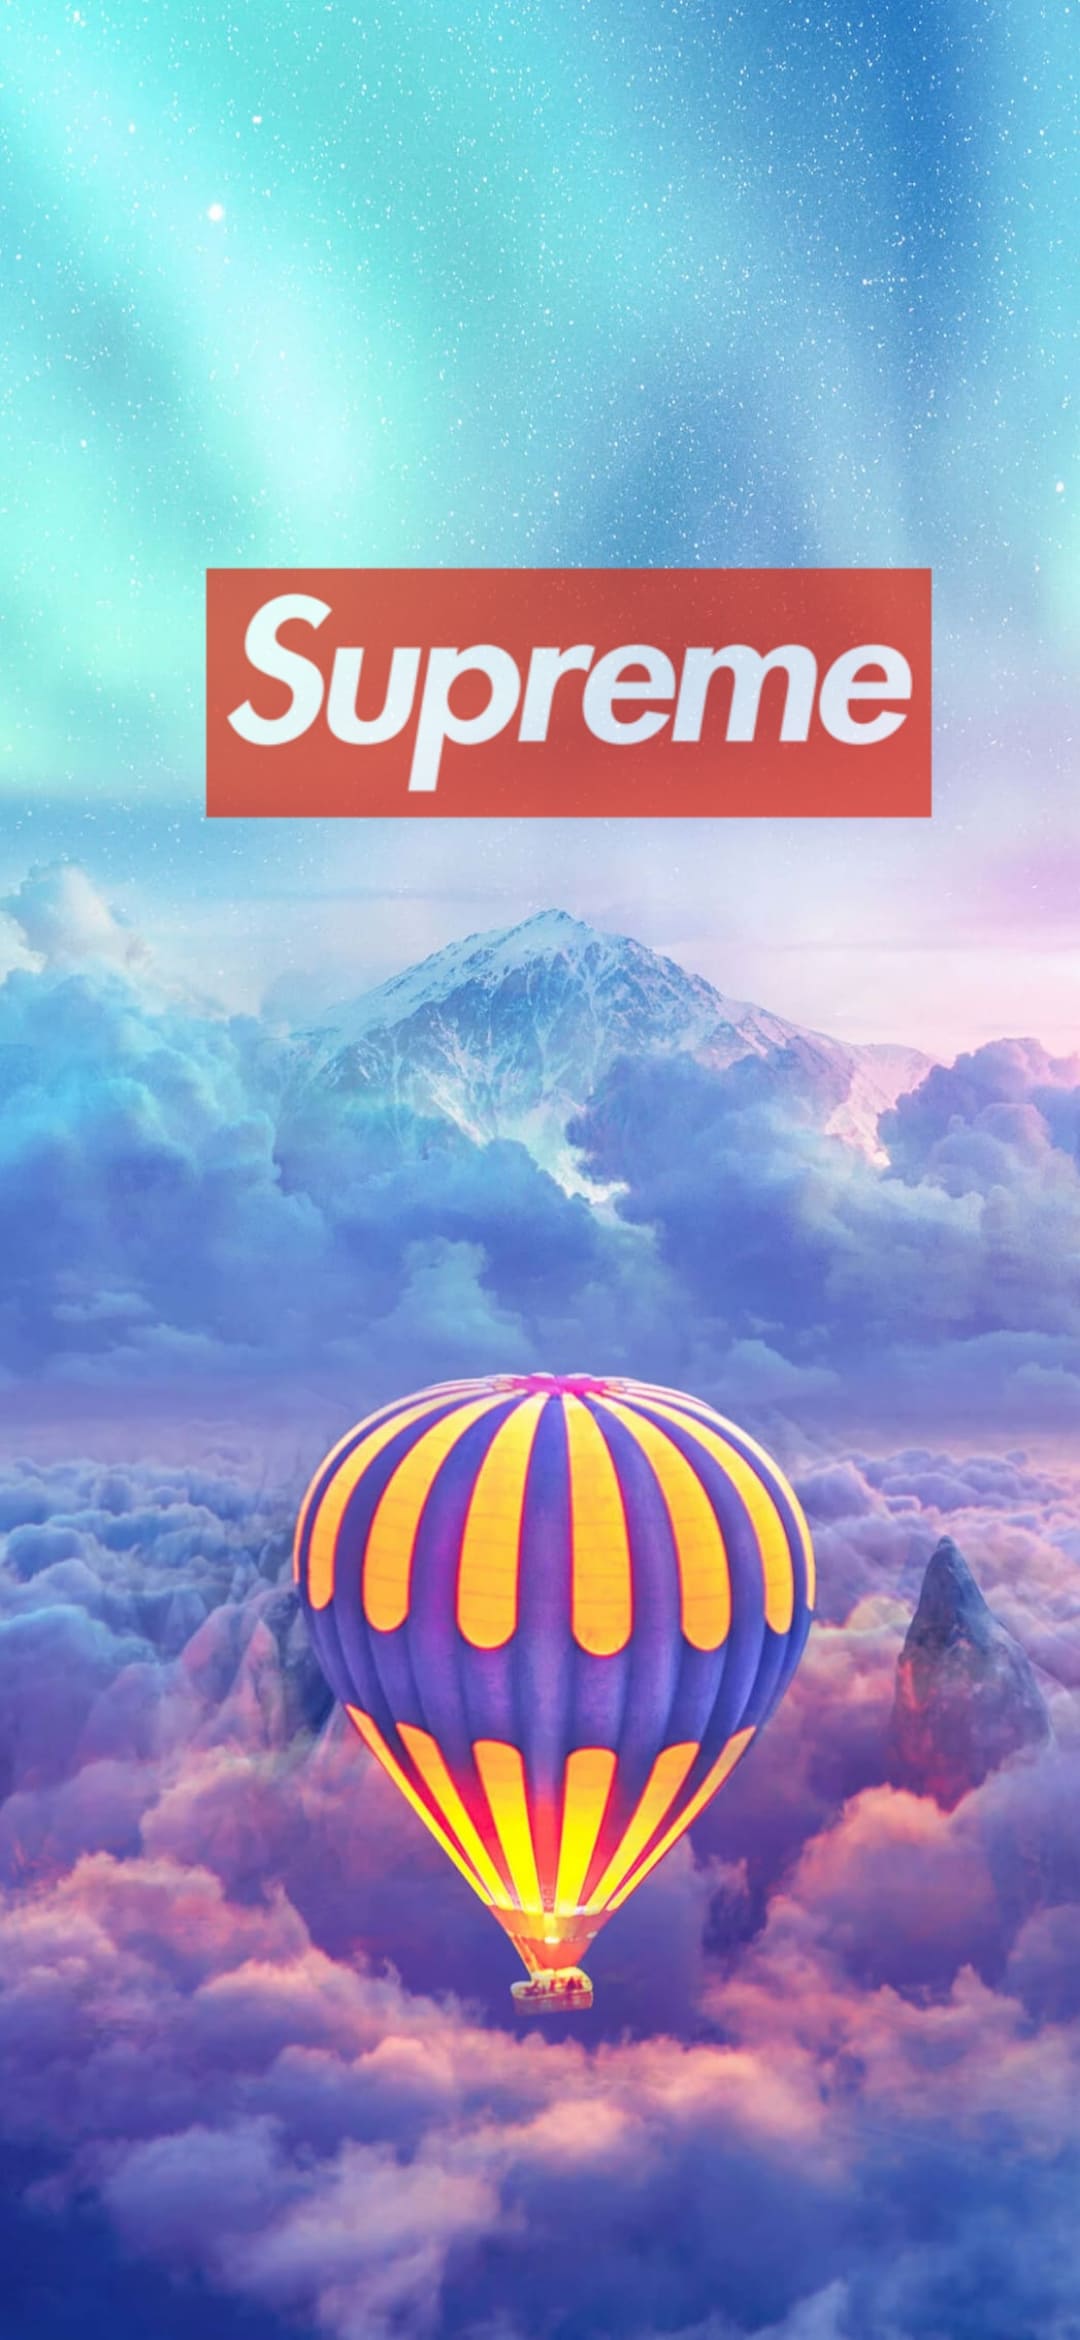 Supreme iPhone 11 Pro Max Wallpaper